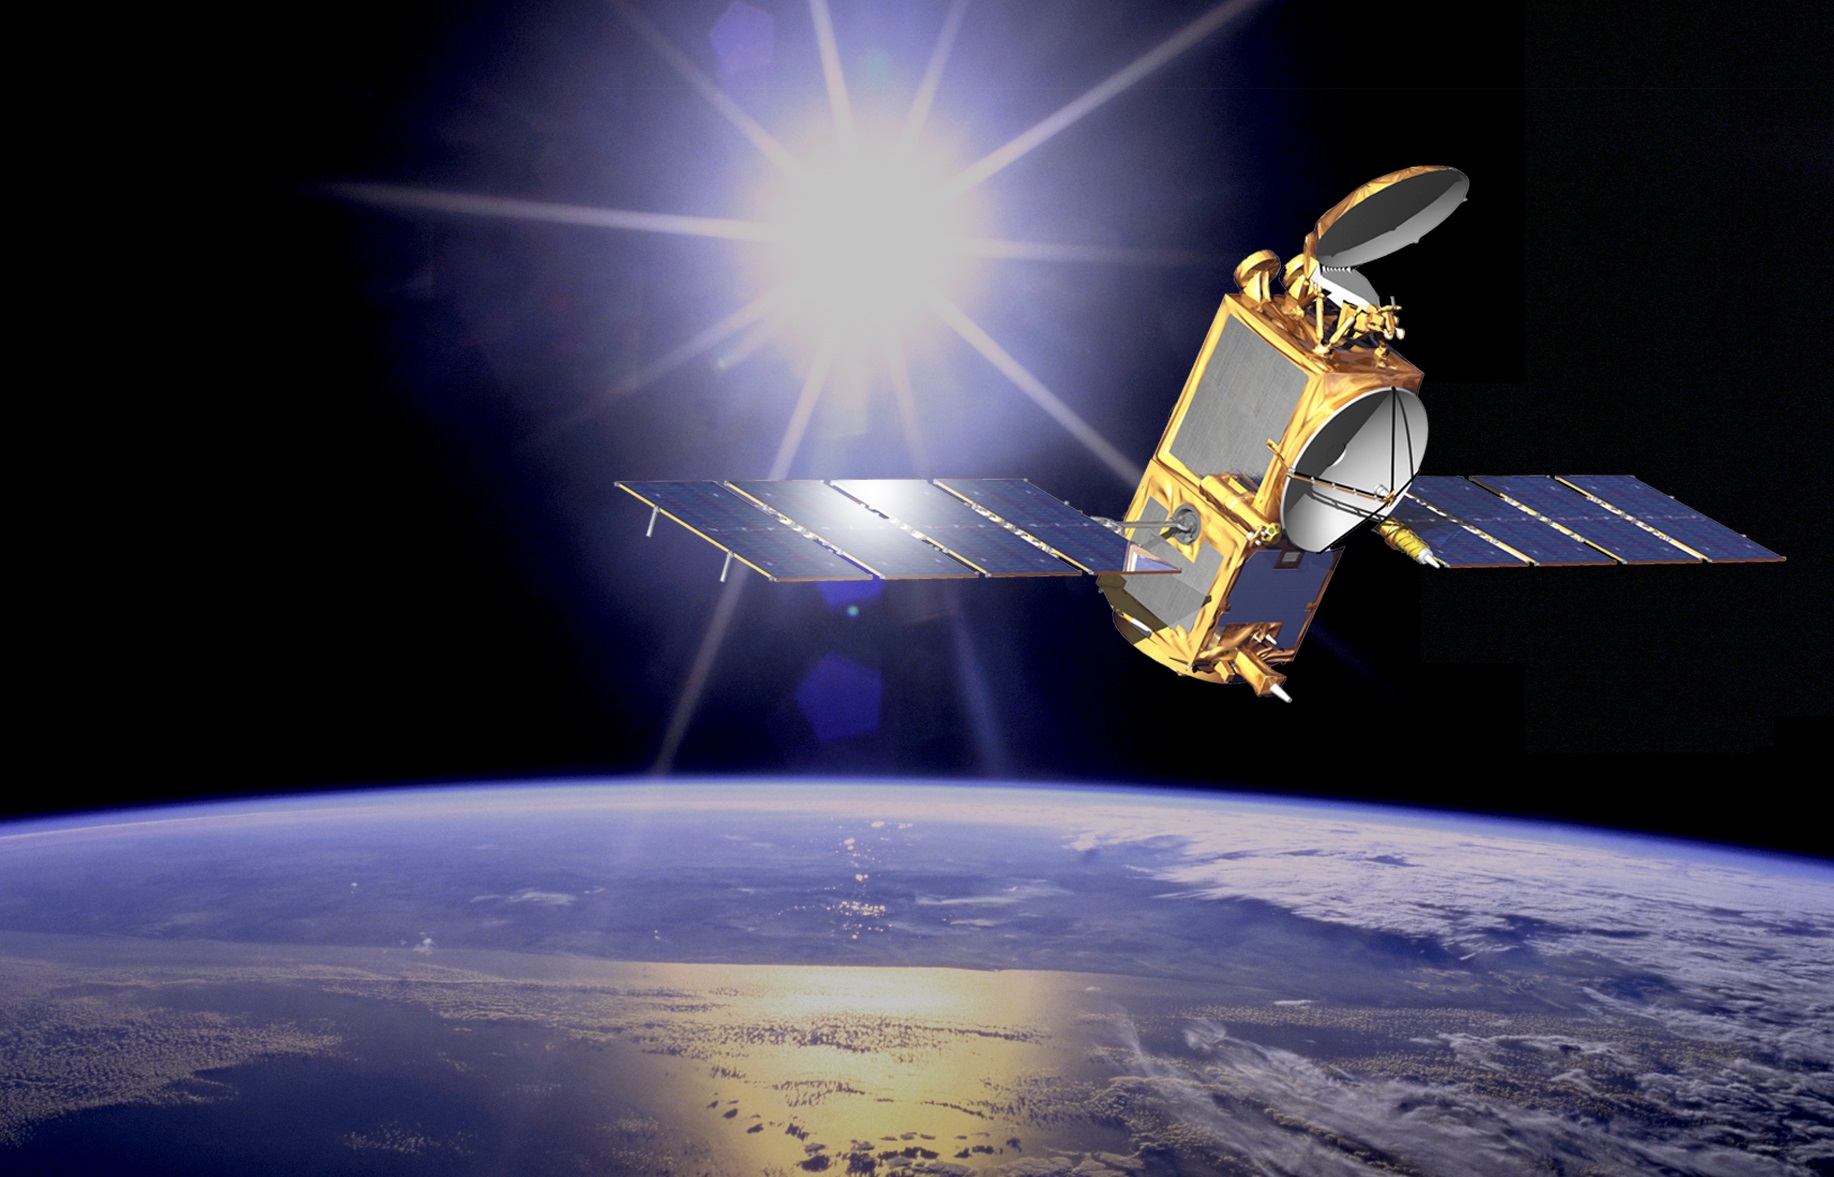 اتمام ماموریت ماهواره “جیسون-۲” به دلیل نقص در سیستم برق، پس از ۱۱ سال